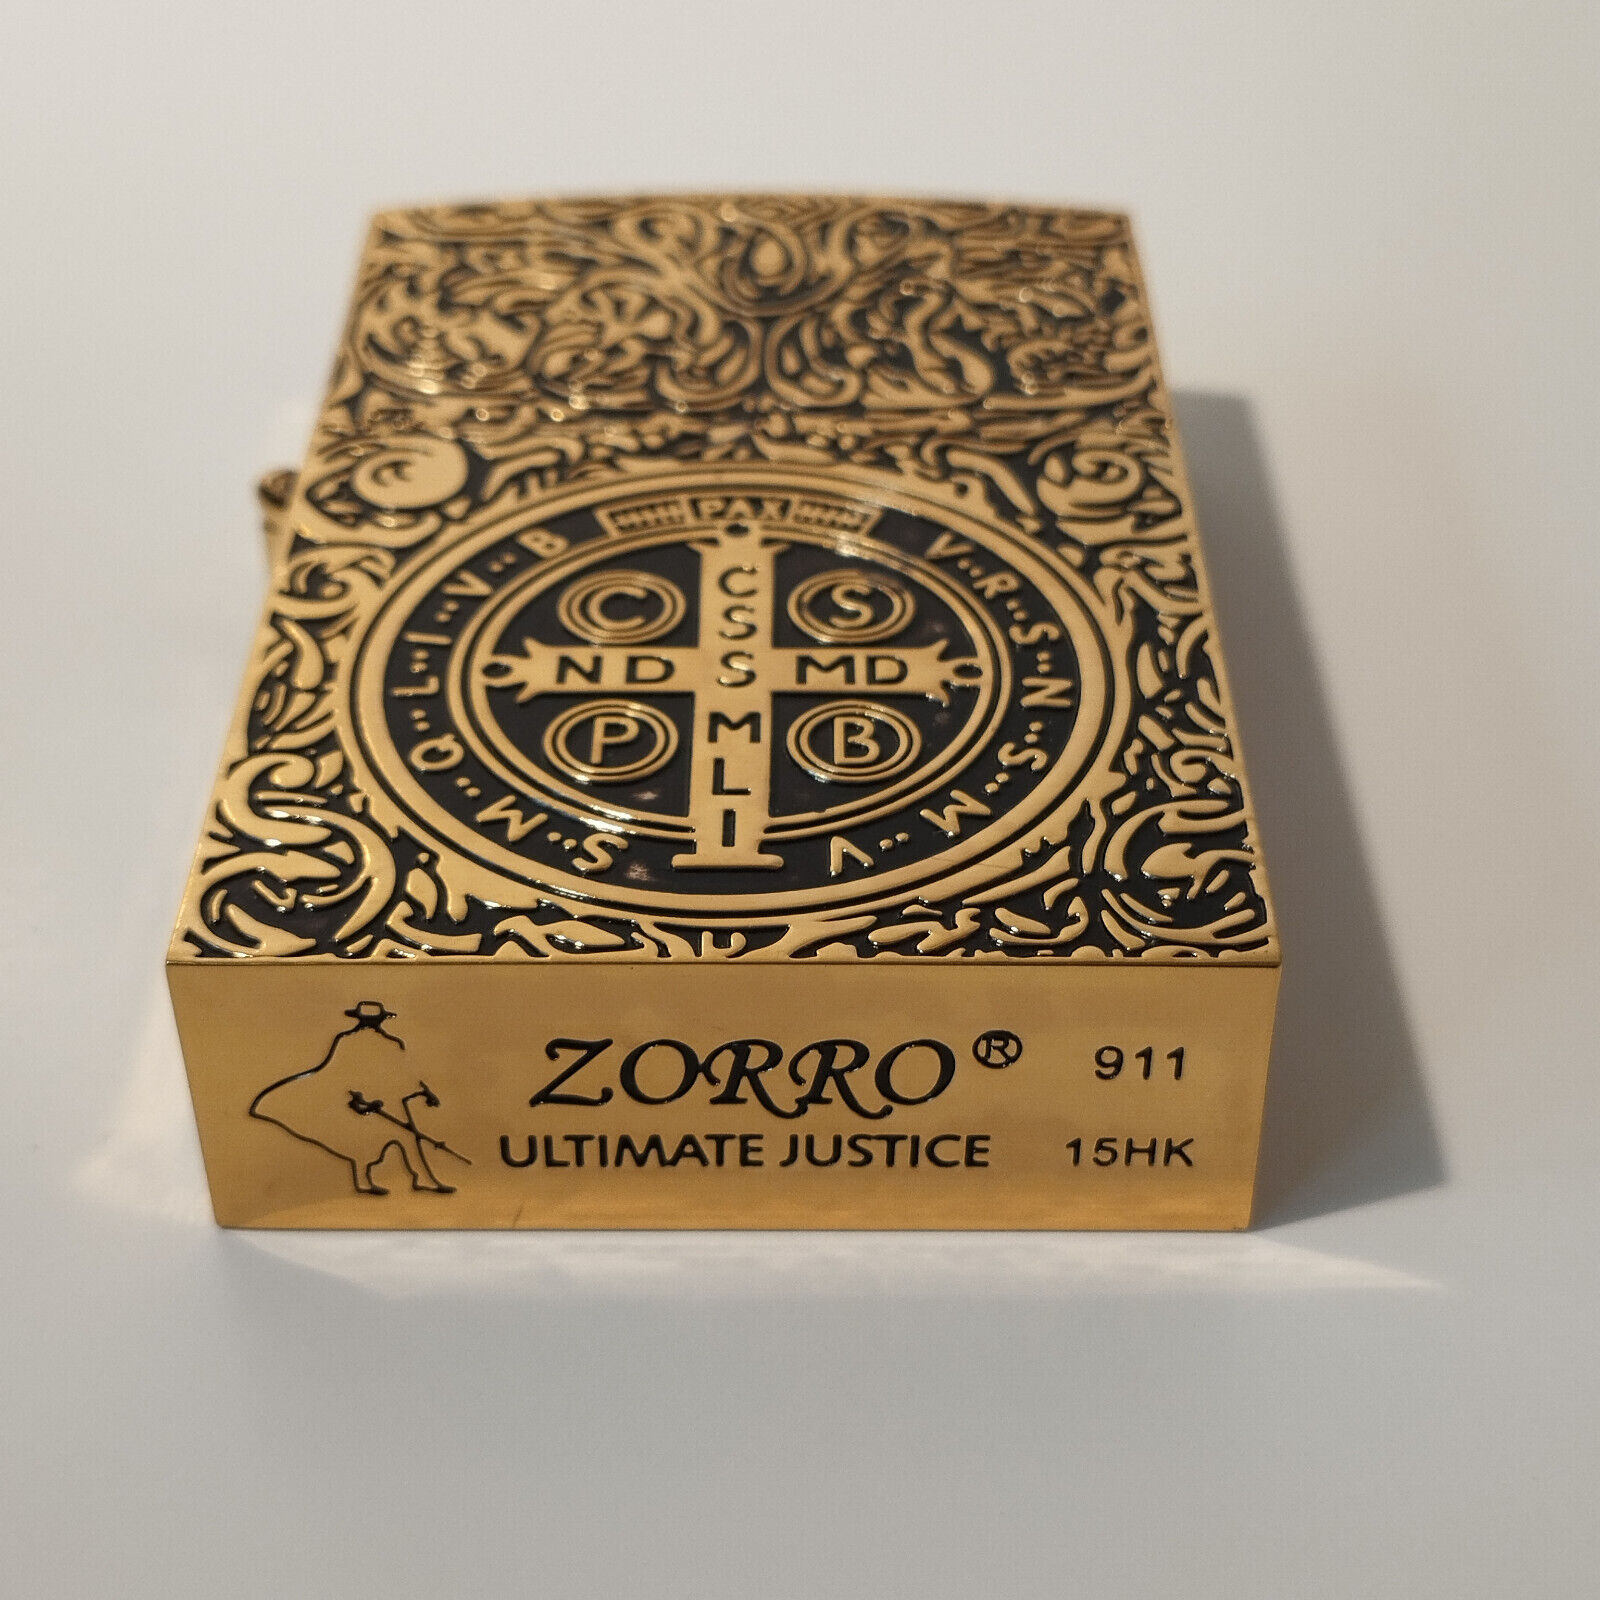 Zorro 911 Constantine Gold Lighter (with Gift Box) - 1:1 Movie Replica